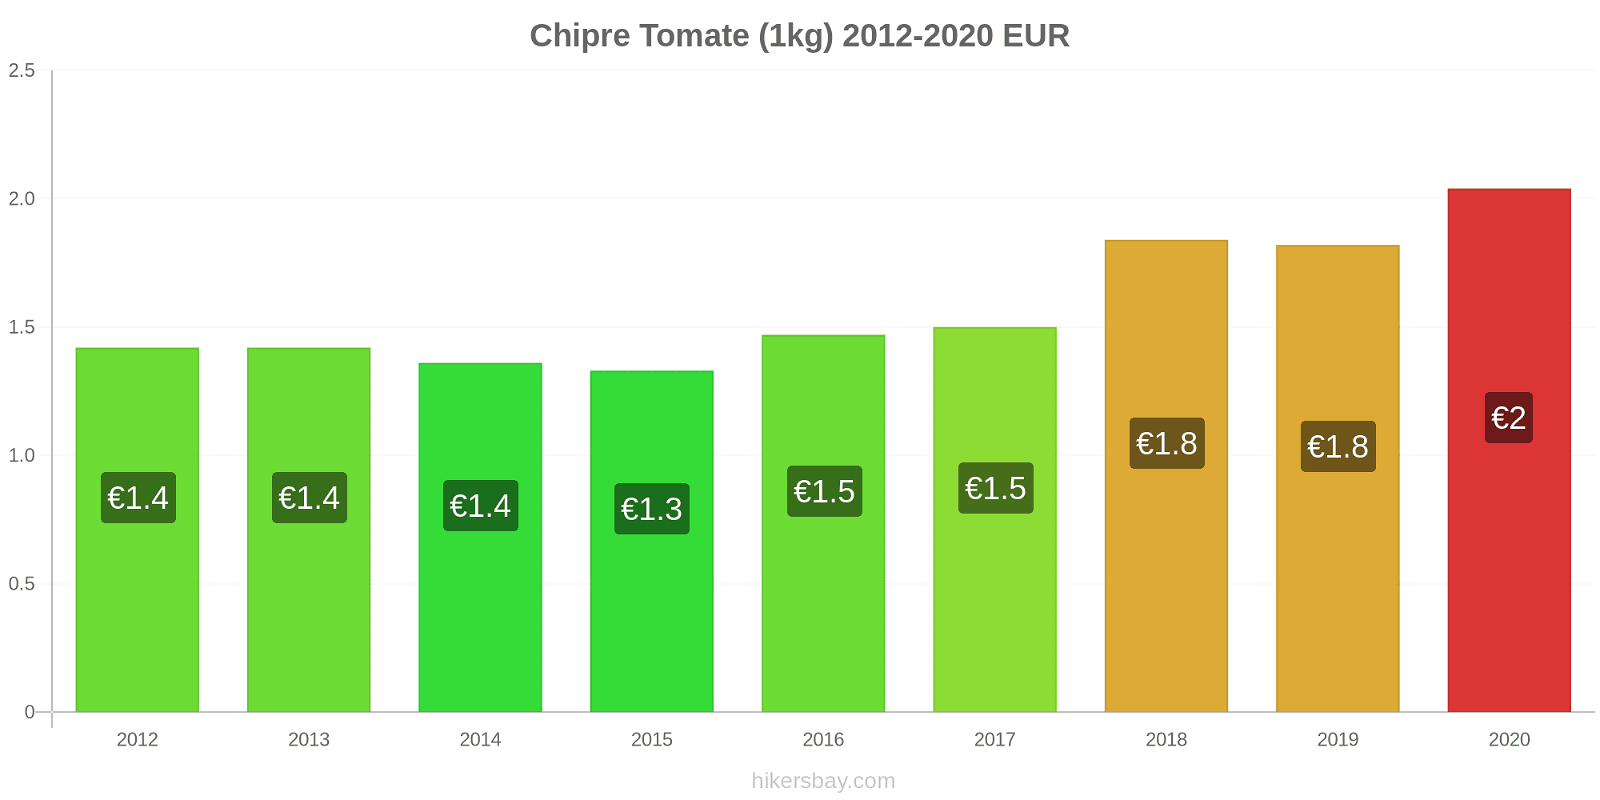 Chipre variação de preço Tomate (1kg) hikersbay.com